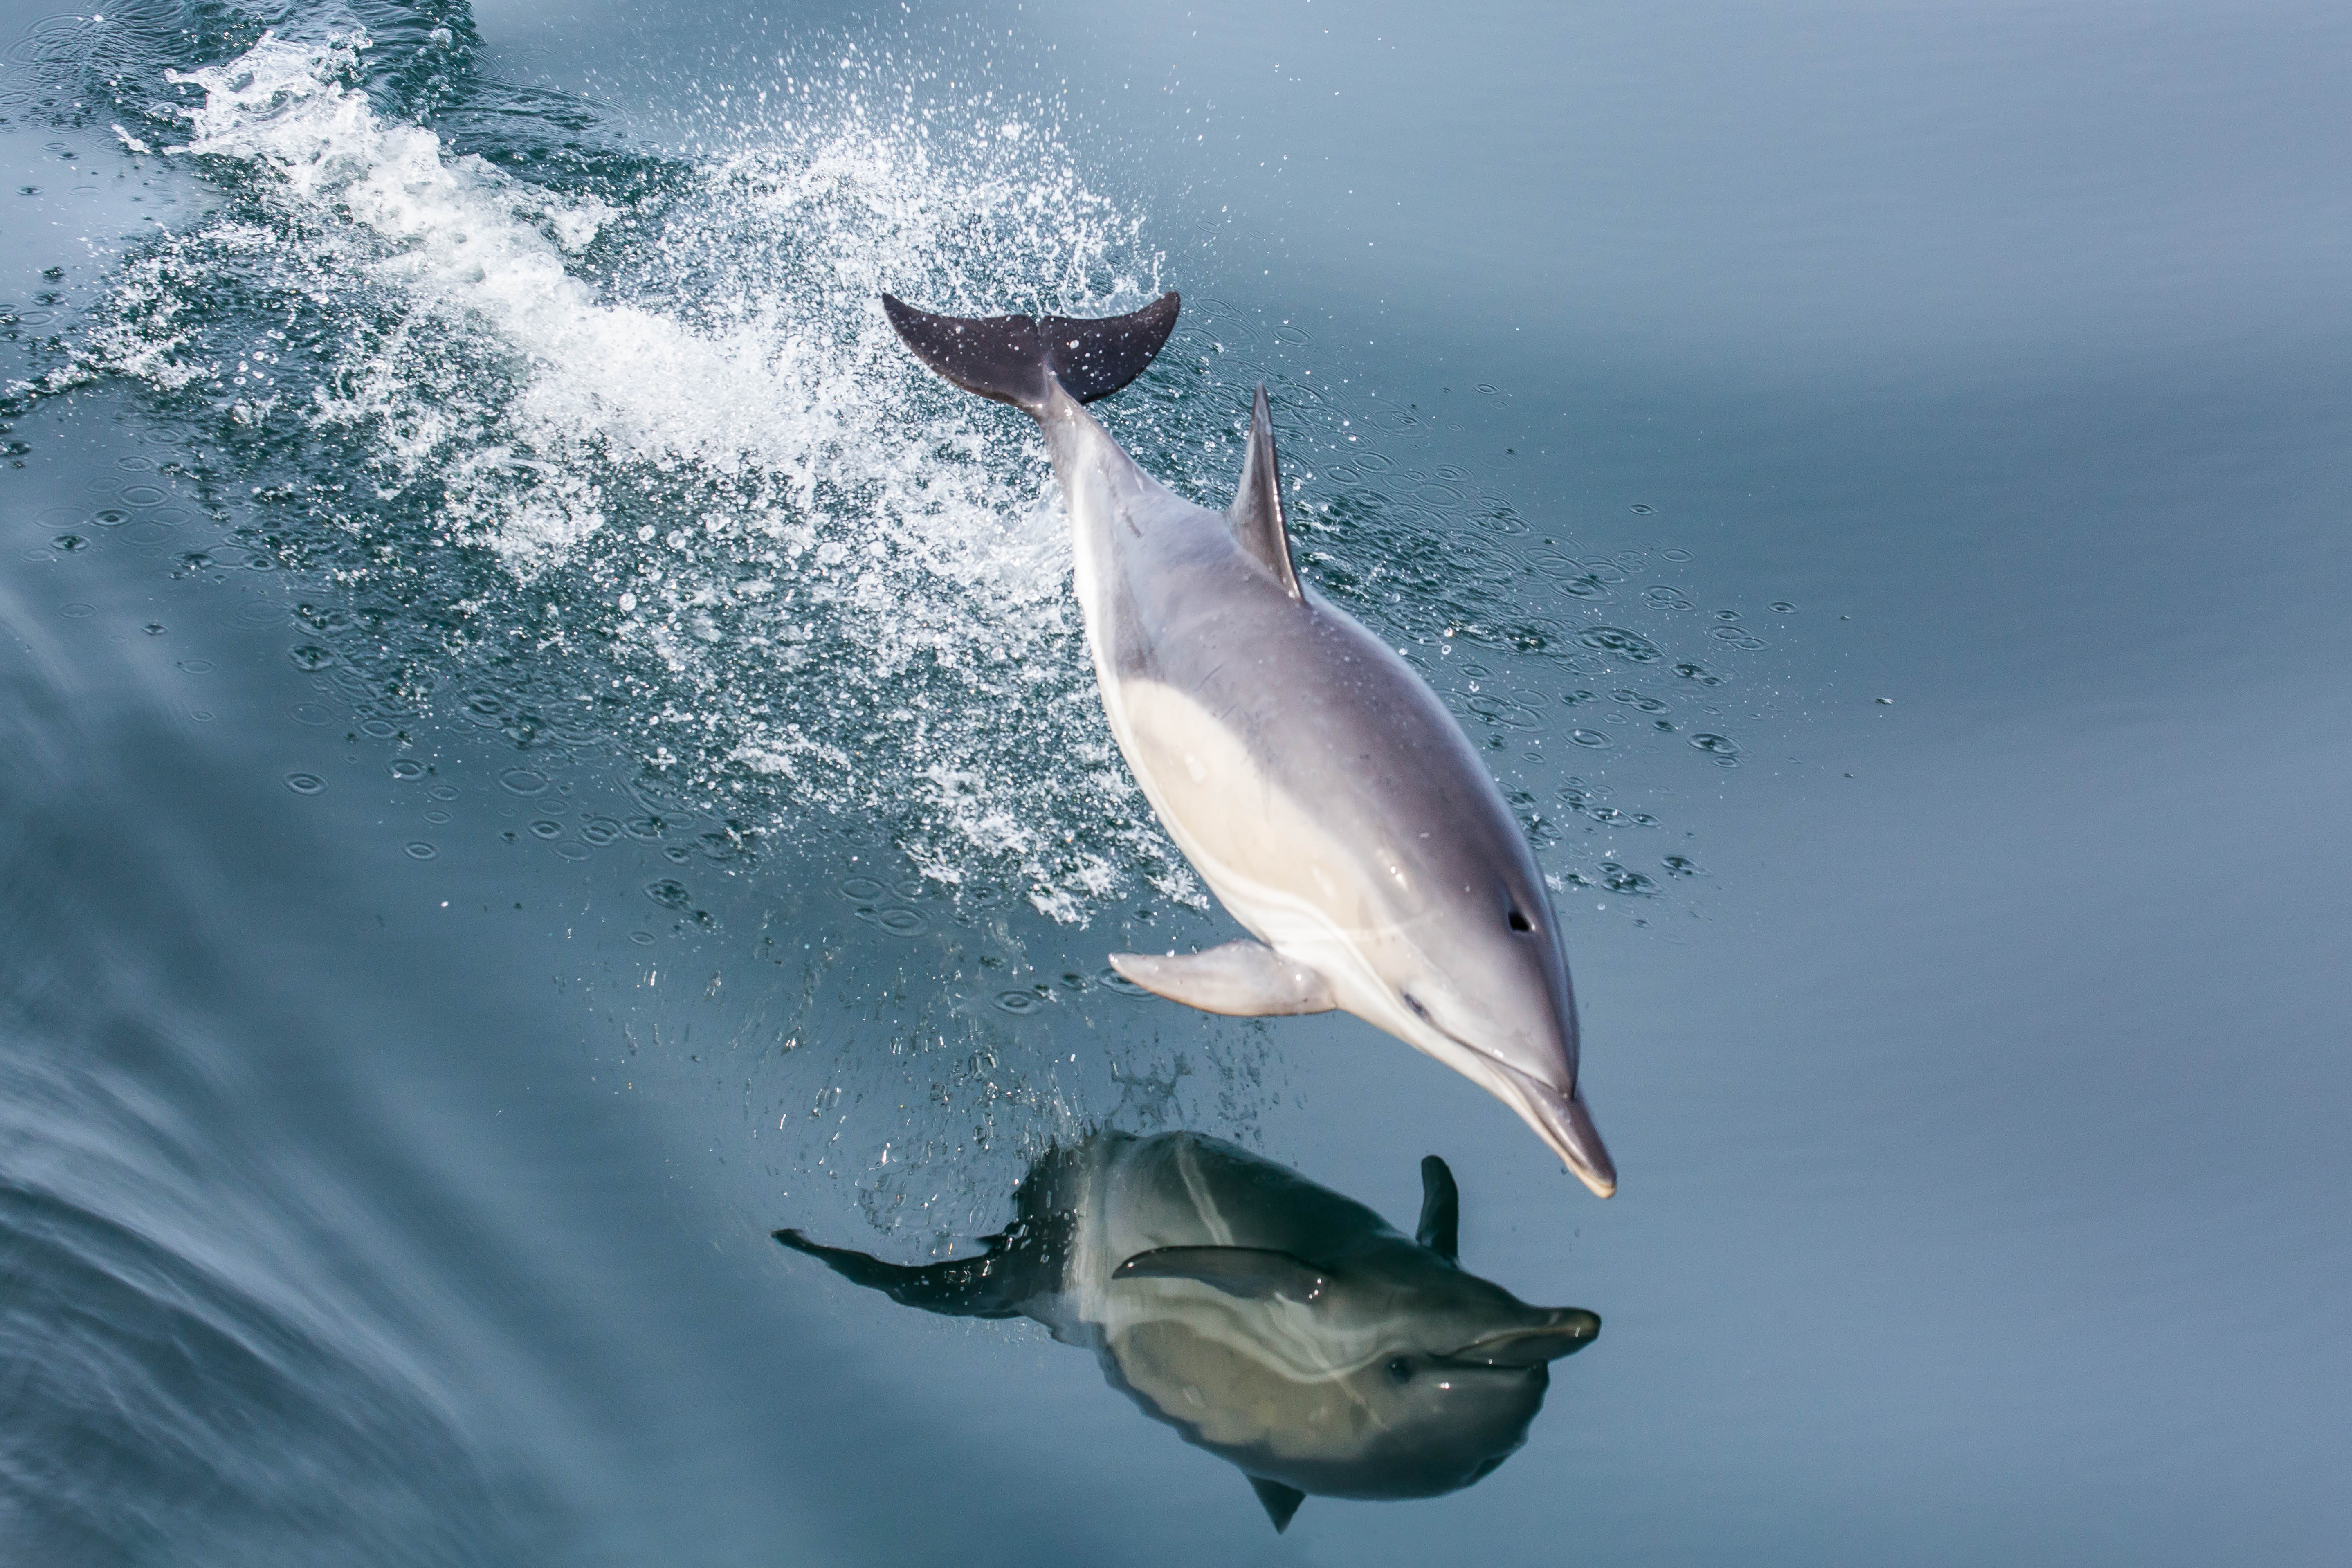 Prises accidentelles de dauphins : les pêcheurs notent une réduction « encourageante »